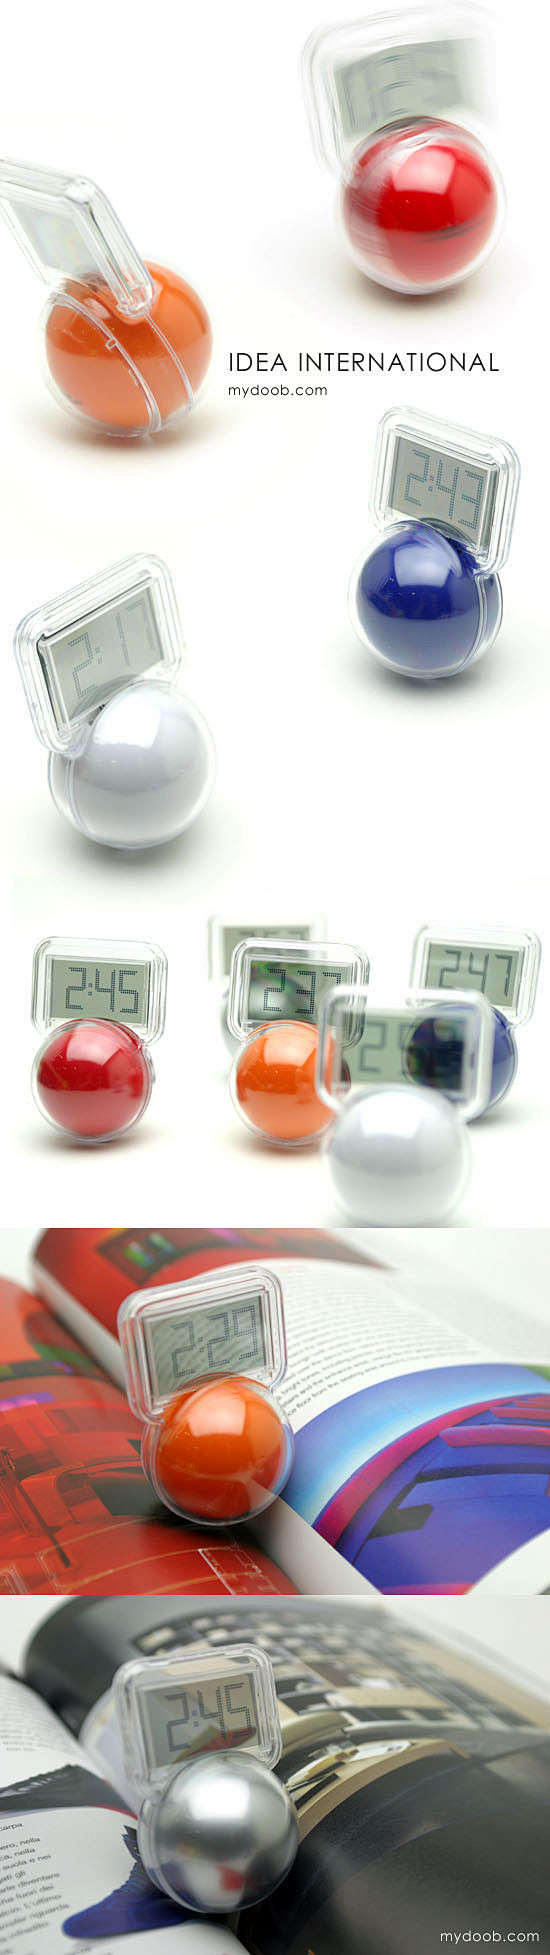 韩国钟表等创意小产品设计